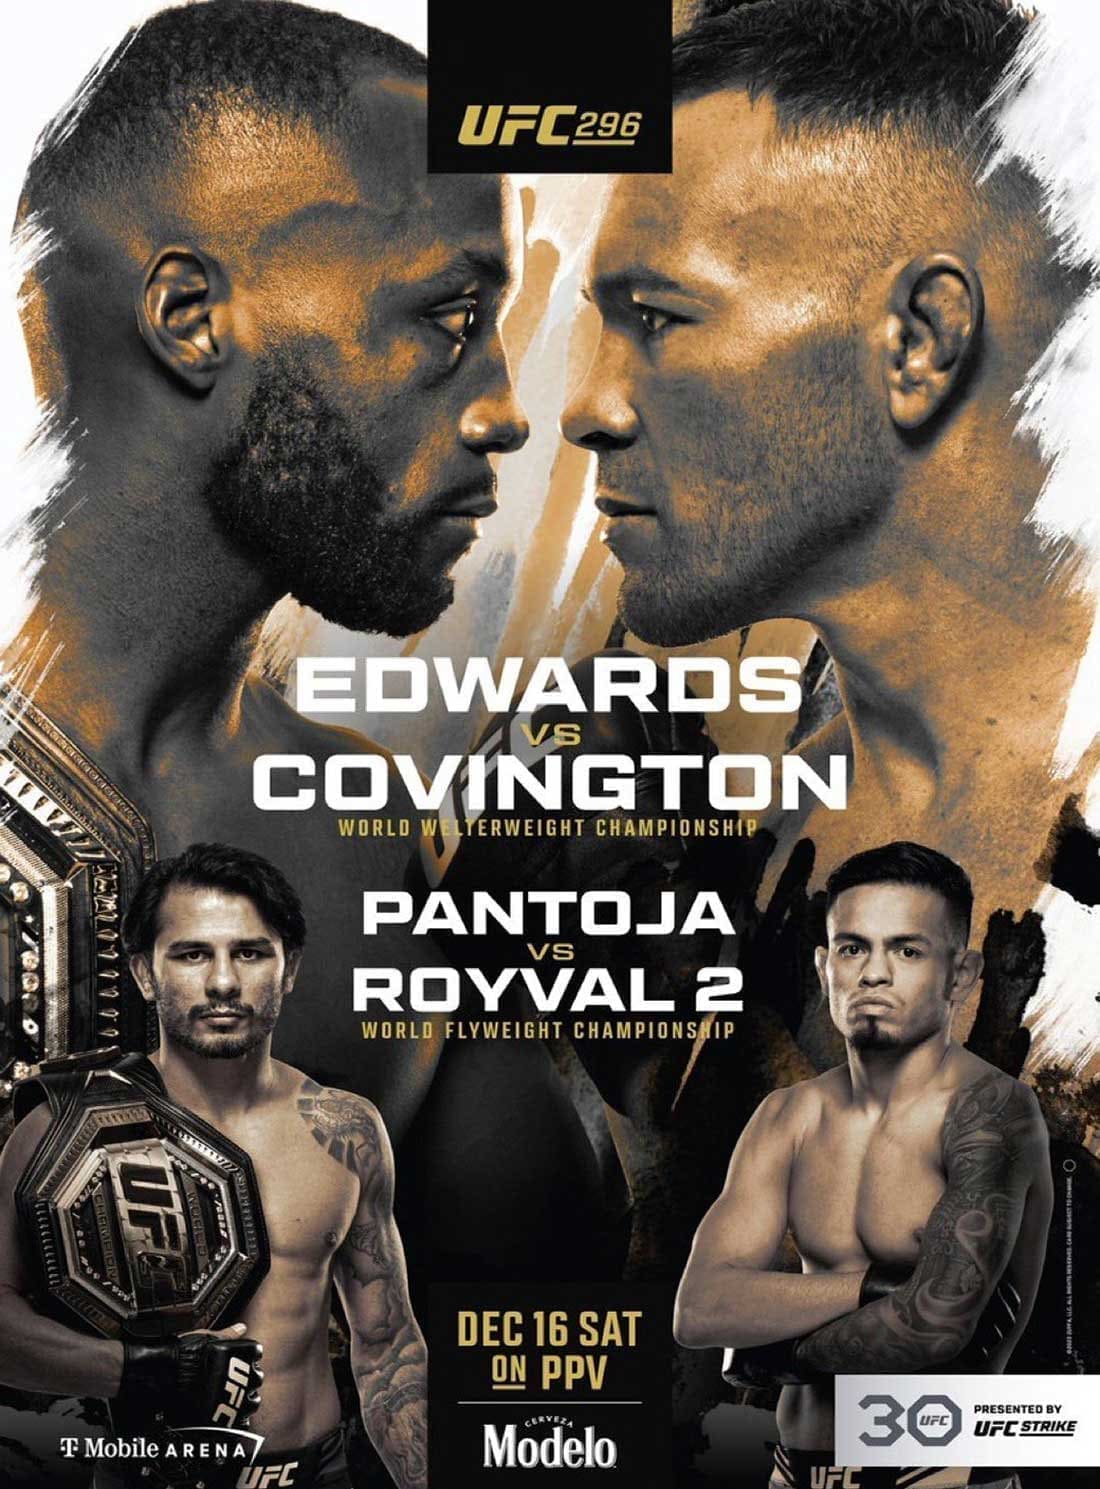 UFC 296: Эдвардс - Ковингтон дата проведения, кард, участники и результаты